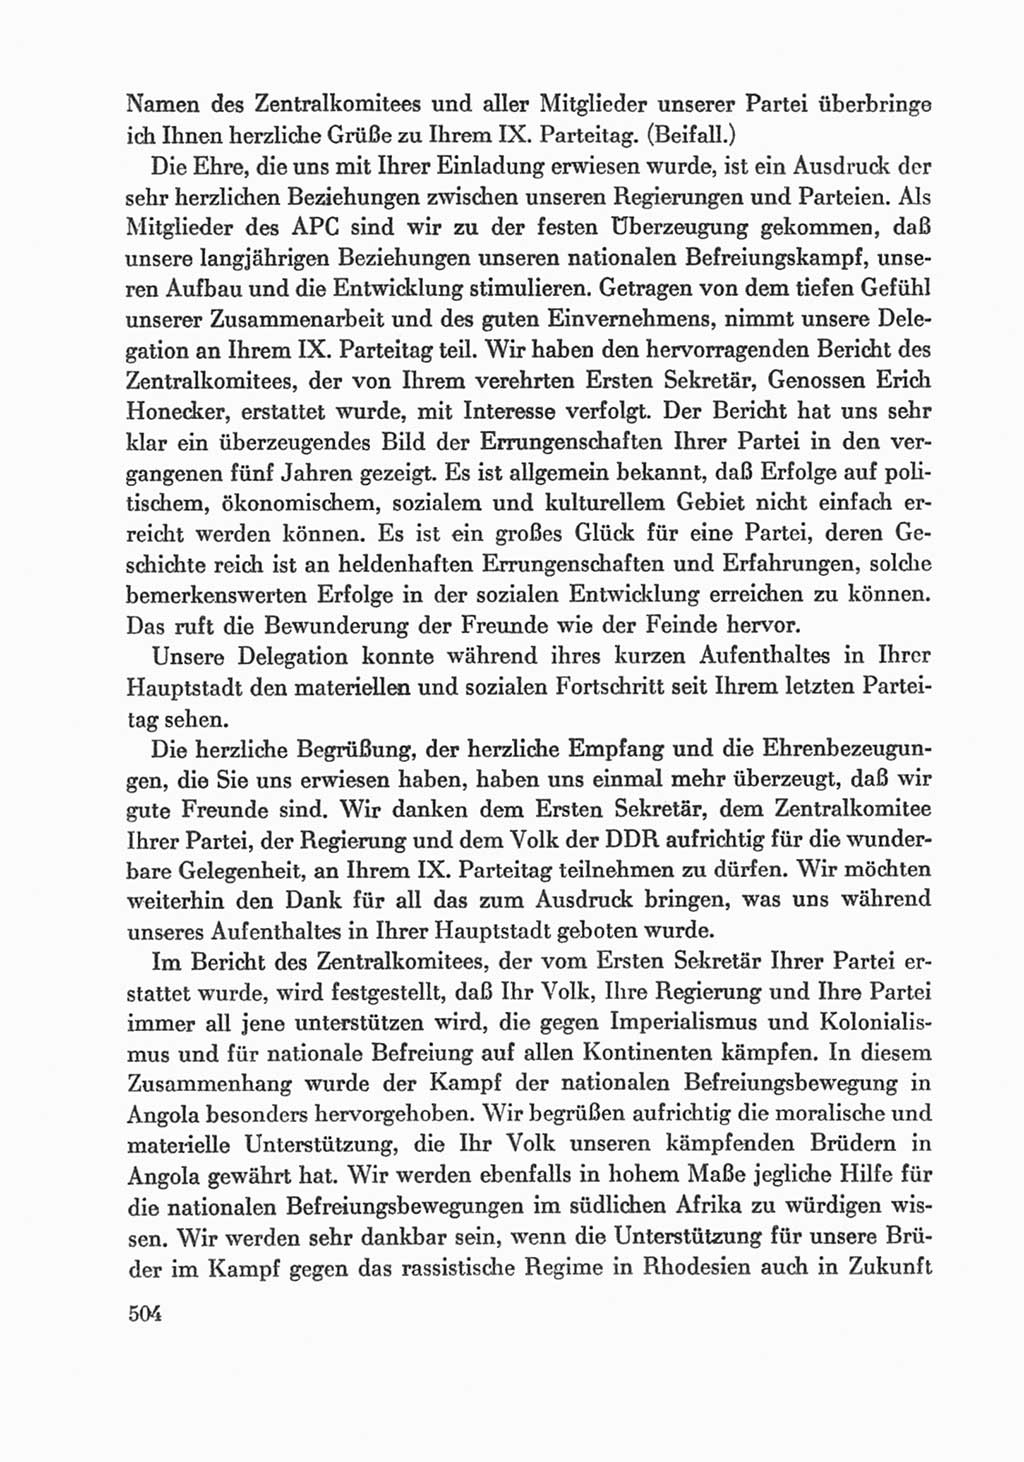 Protokoll der Verhandlungen des Ⅸ. Parteitages der Sozialistischen Einheitspartei Deutschlands (SED) [Deutsche Demokratische Republik (DDR)] 1976, Band 1, Seite 504 (Prot. Verh. Ⅸ. PT SED DDR 1976, Bd. 1, S. 504)